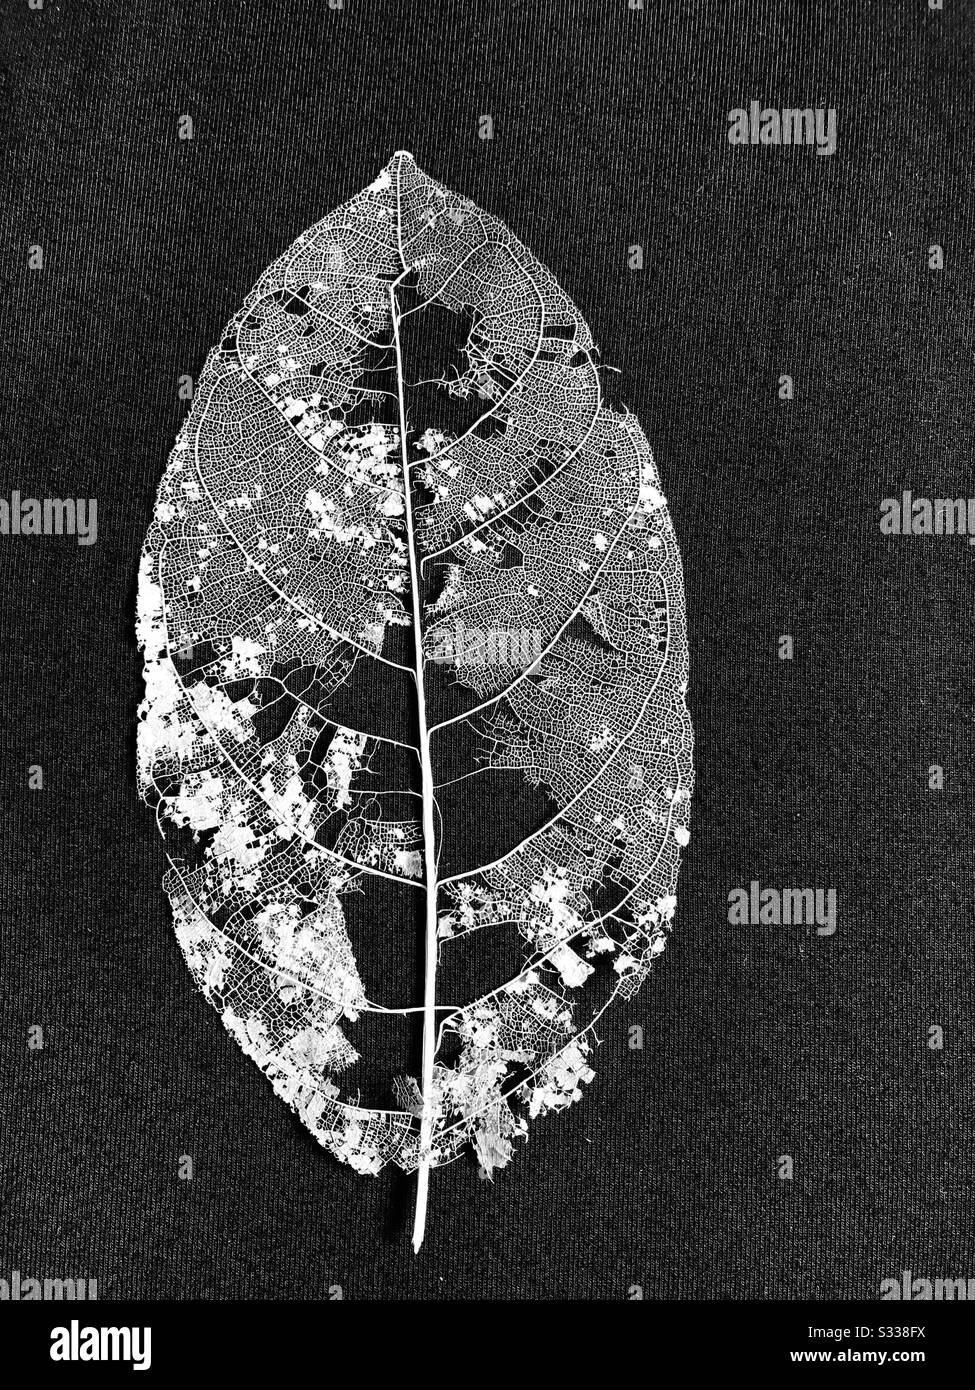 Das Spitzenmuster des Blattseletts, das unter dem Angsana-Baum gefunden wurde, der die Struktur der Venen zeigt, nahm mit schwarzem Hintergrund Schnappschuss Stockfoto